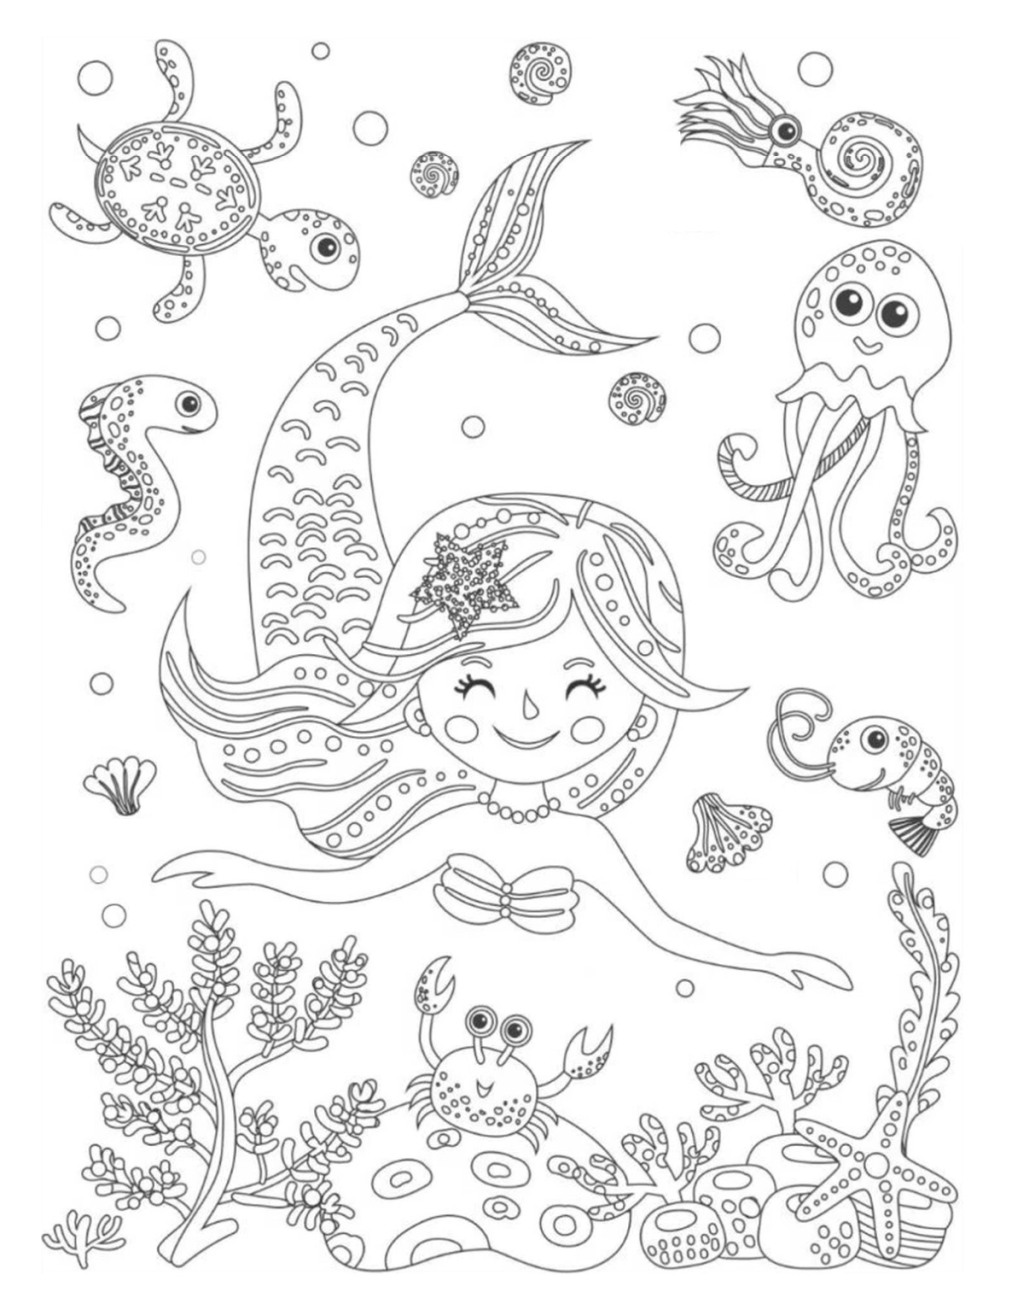 Underwater mermaid coloring page